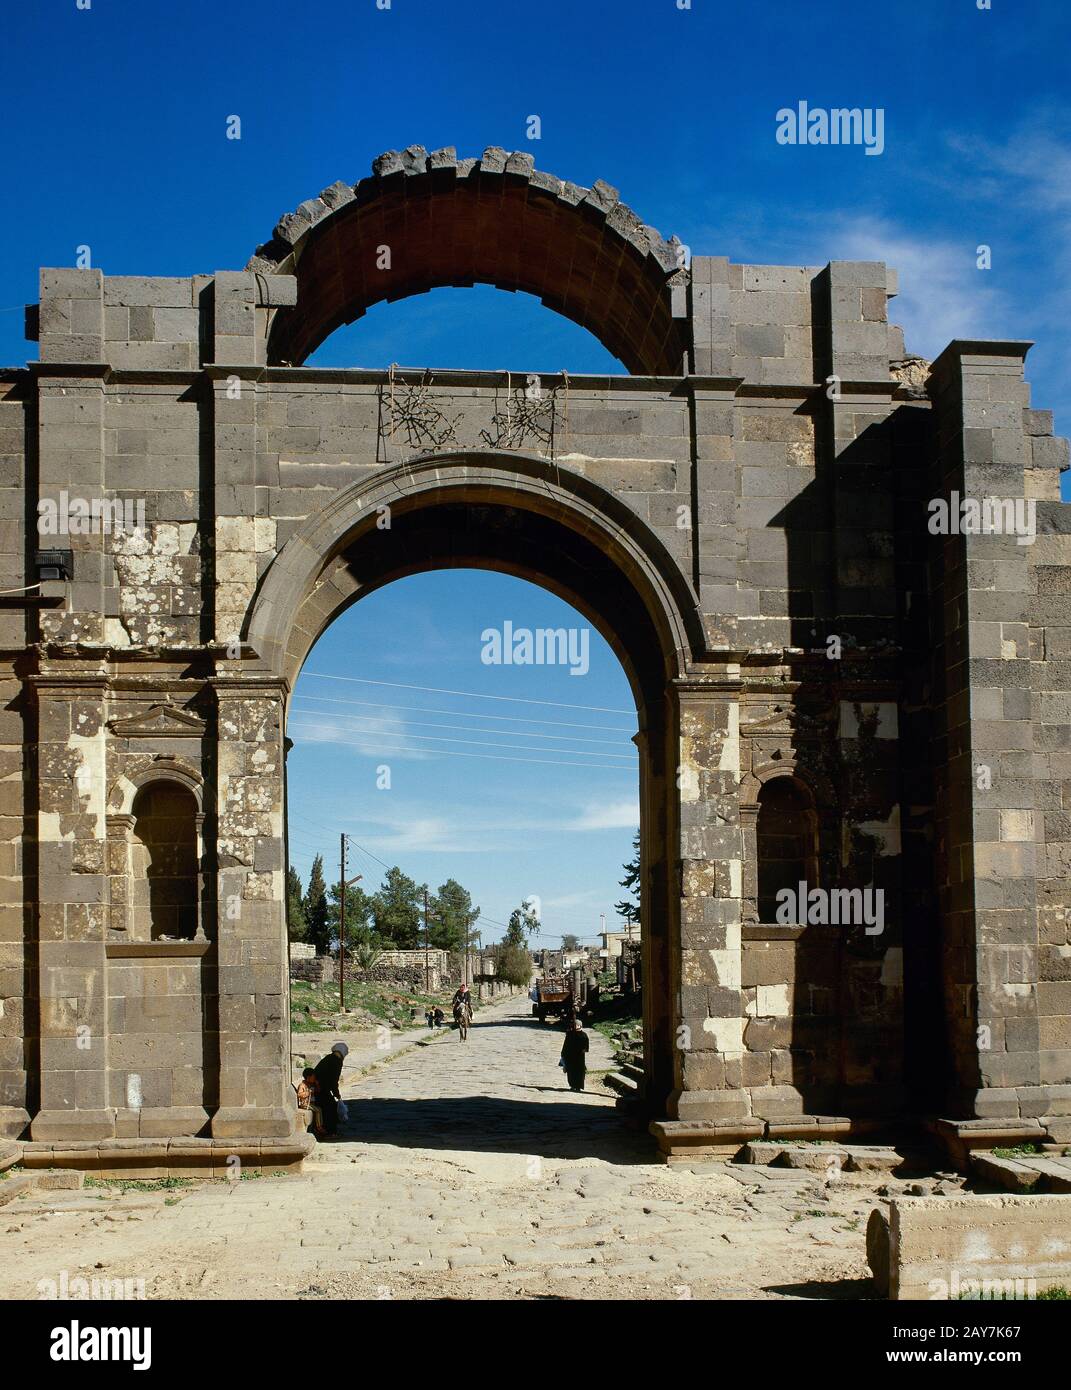 Syrien, Bosra. Das Bad al-Hama (Tor des Windes). Das am besten erhaltene Stadttor, erbaut im 2. Jahrhundert. Foto vor dem syrischen Bürgerkrieg gemacht. Stockfoto